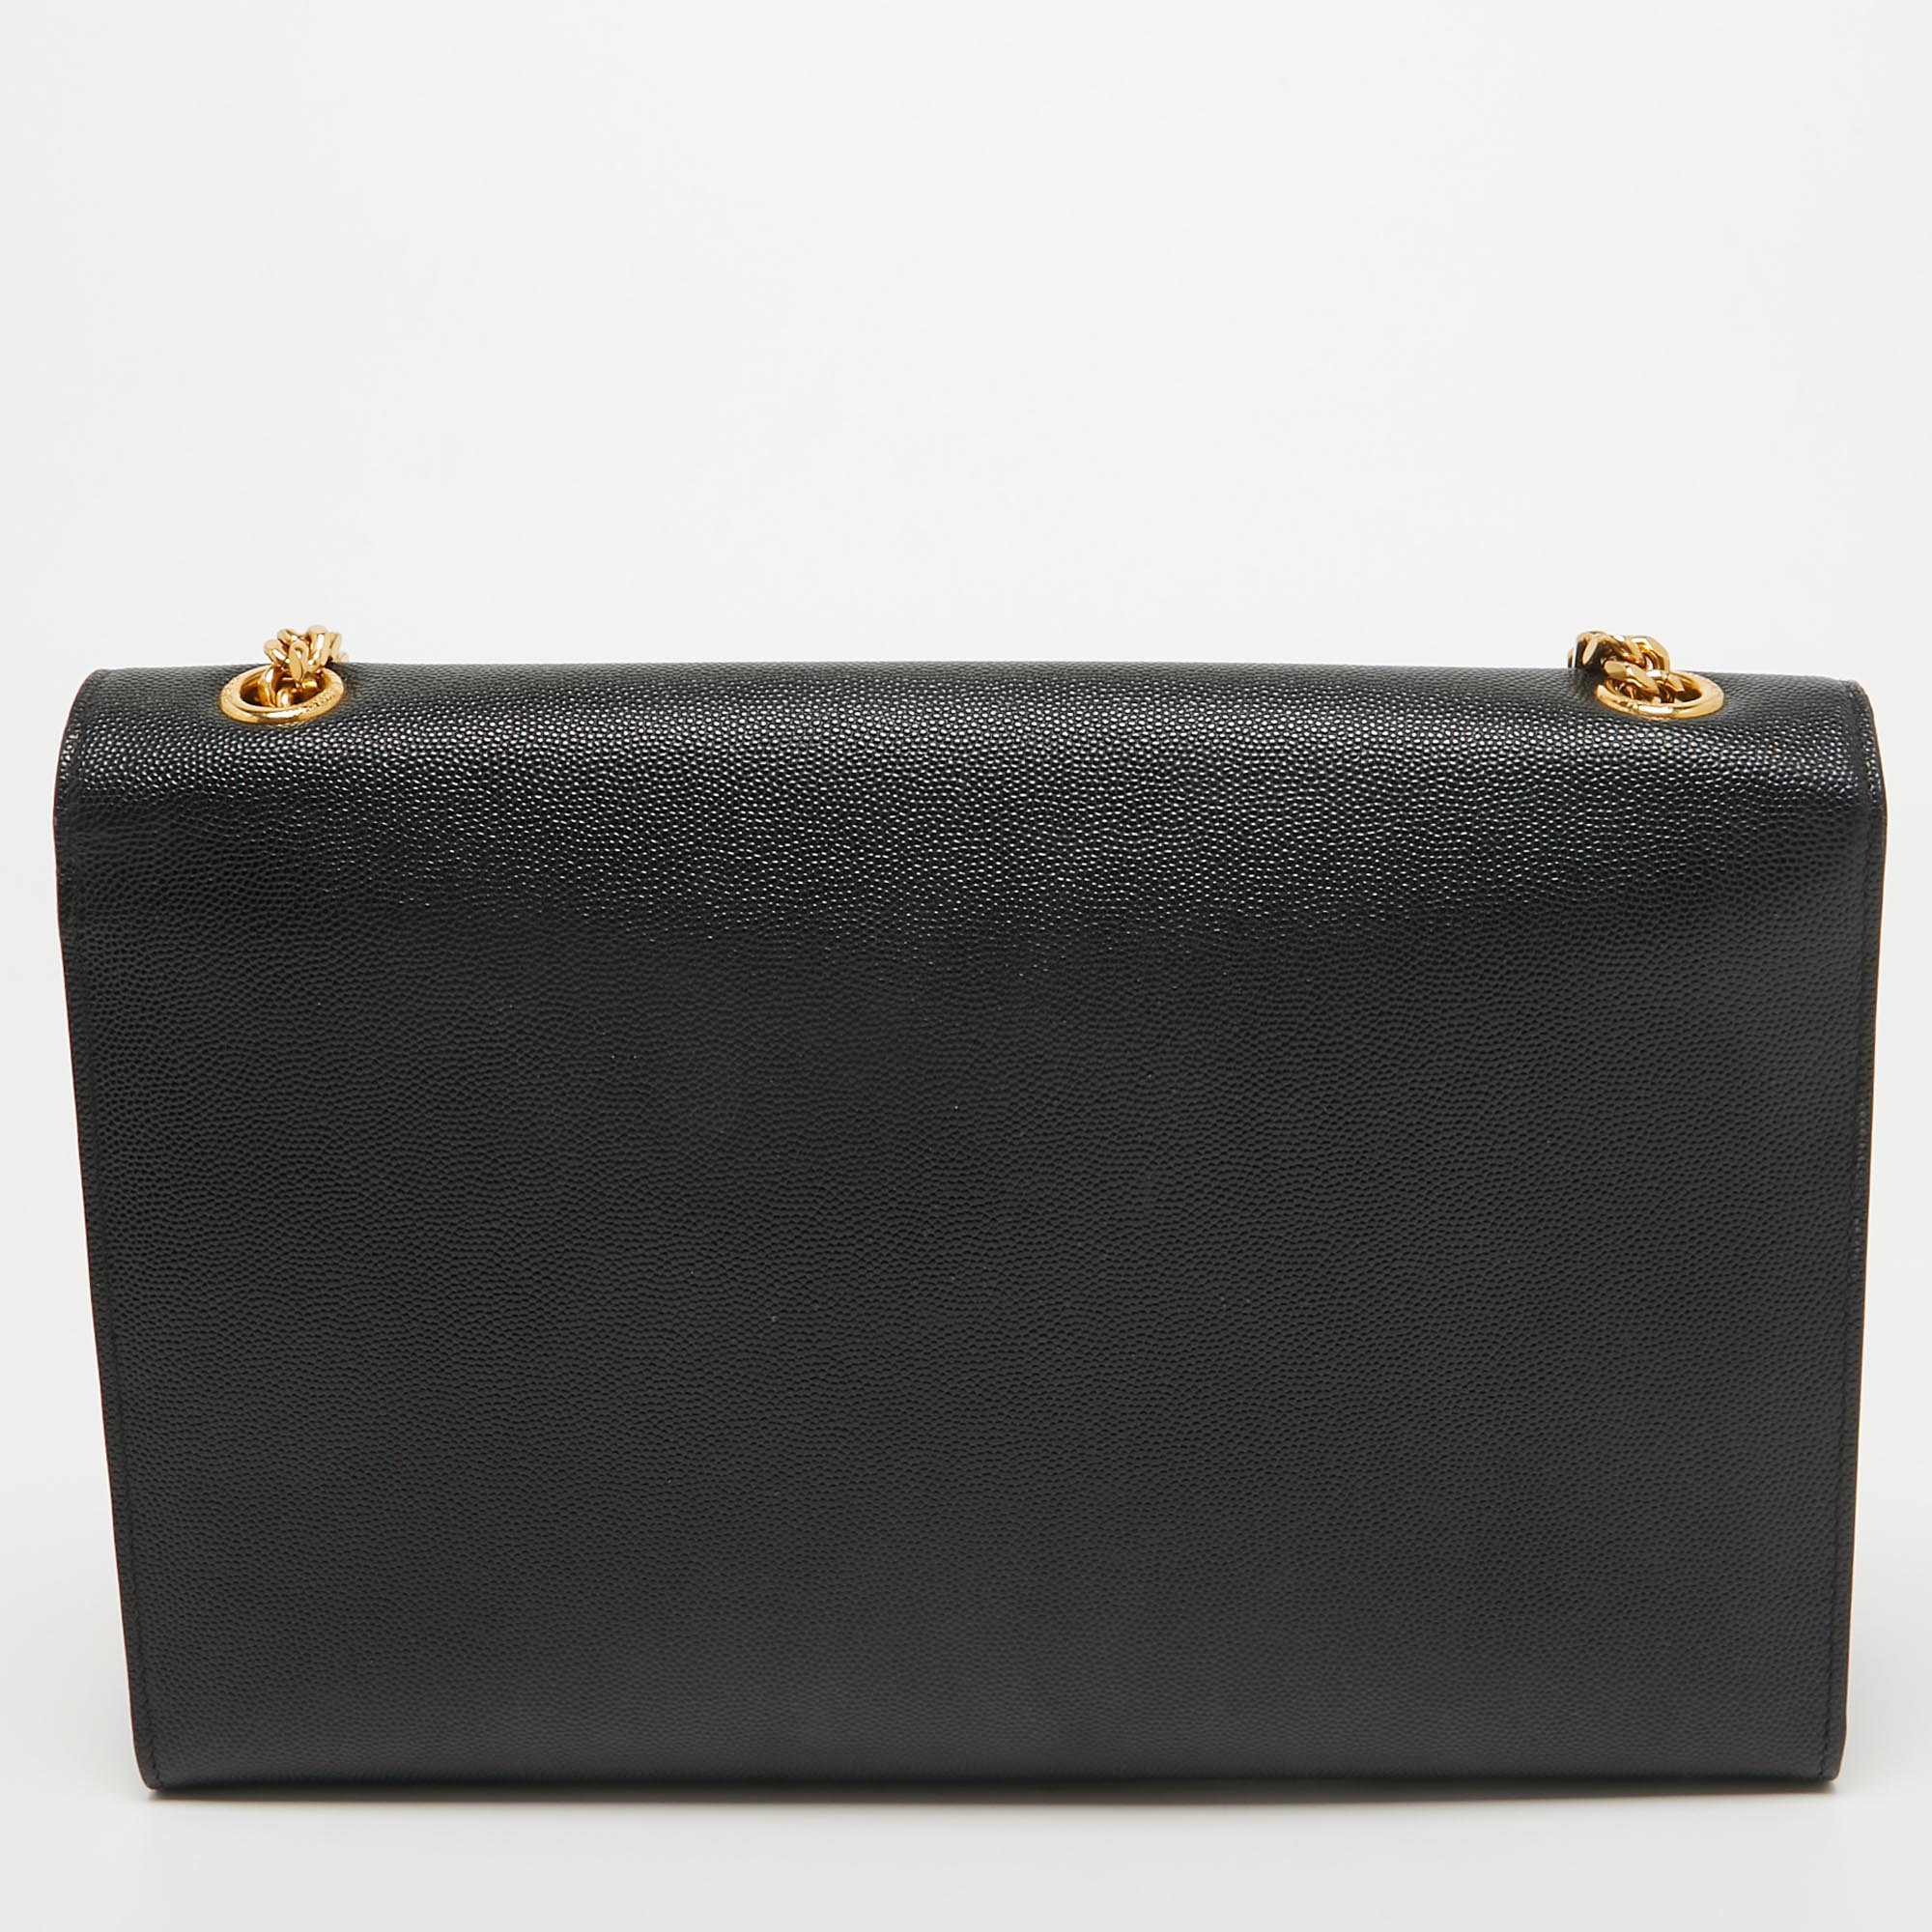 Saint Laurent Black Leather Large Kate Shoulder Bag